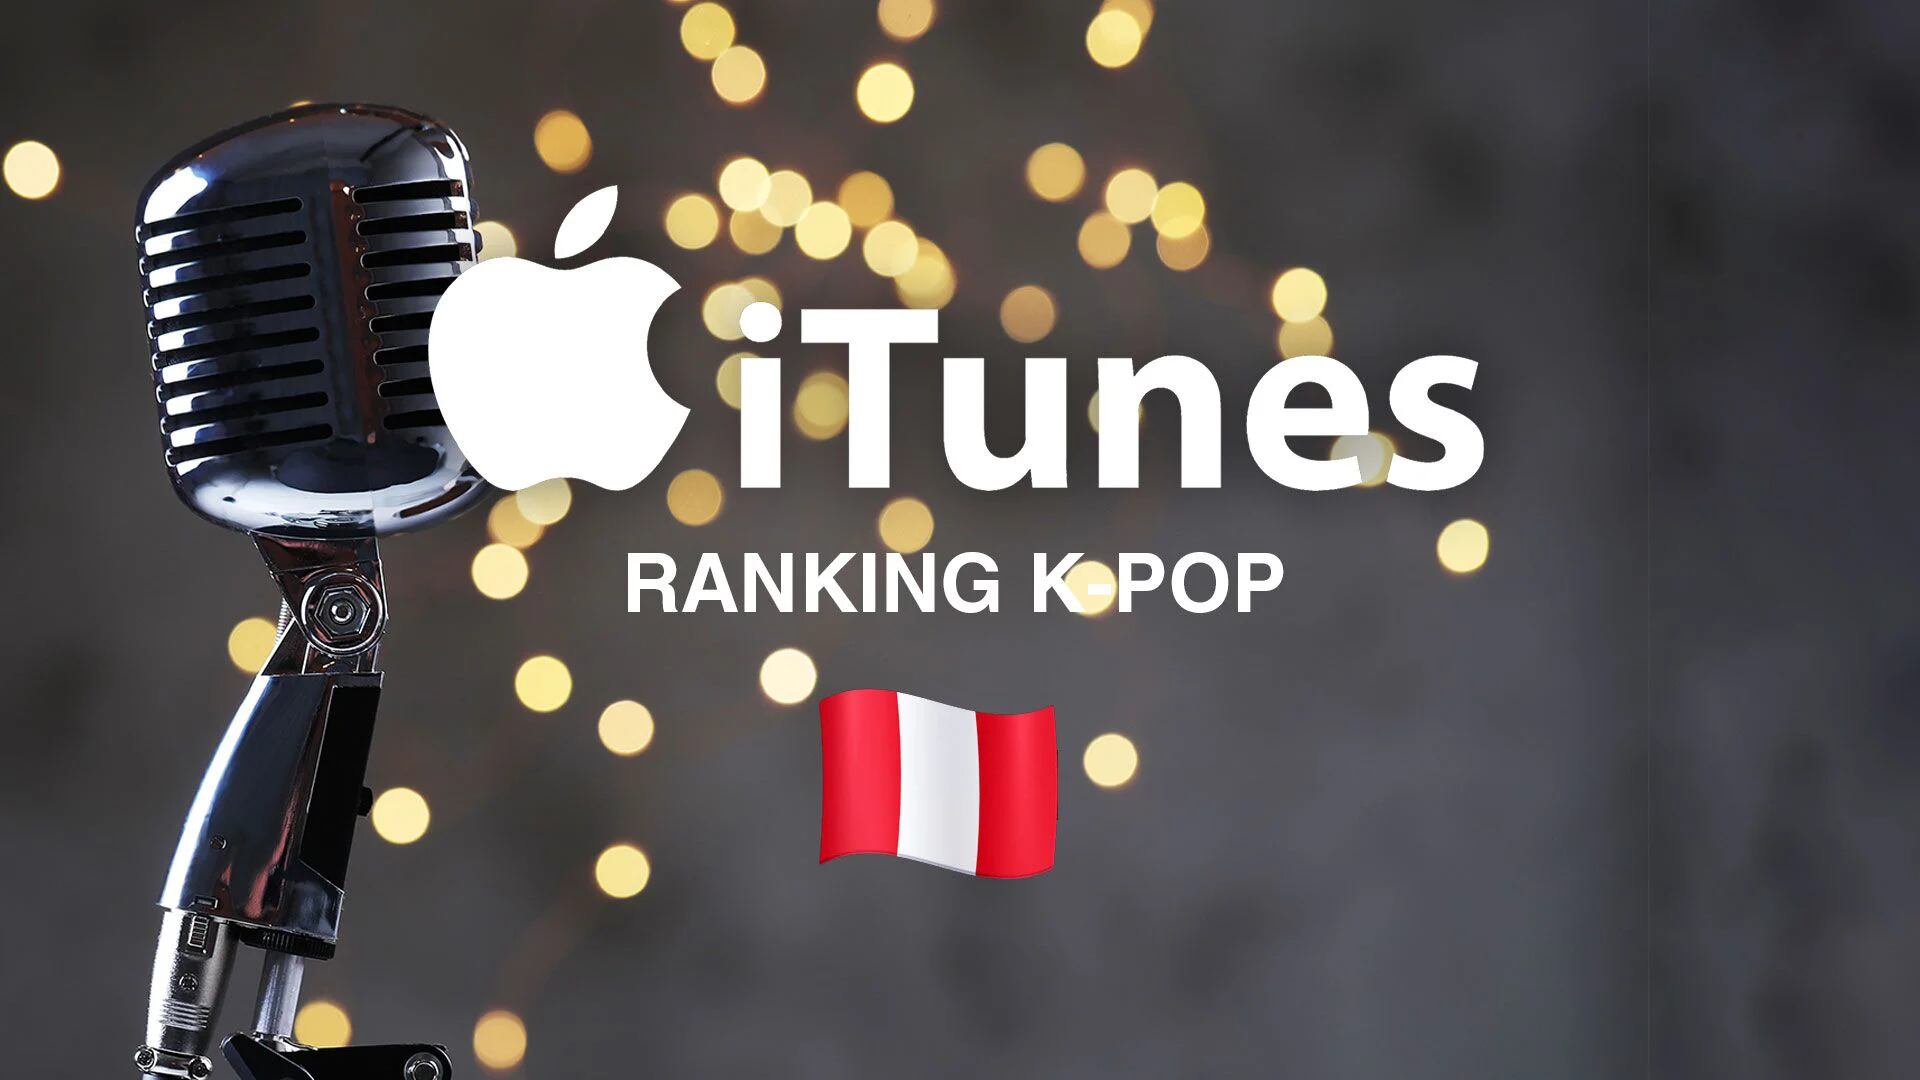 K-pop en iTunes: las 10 canciones más sonadas en Perú